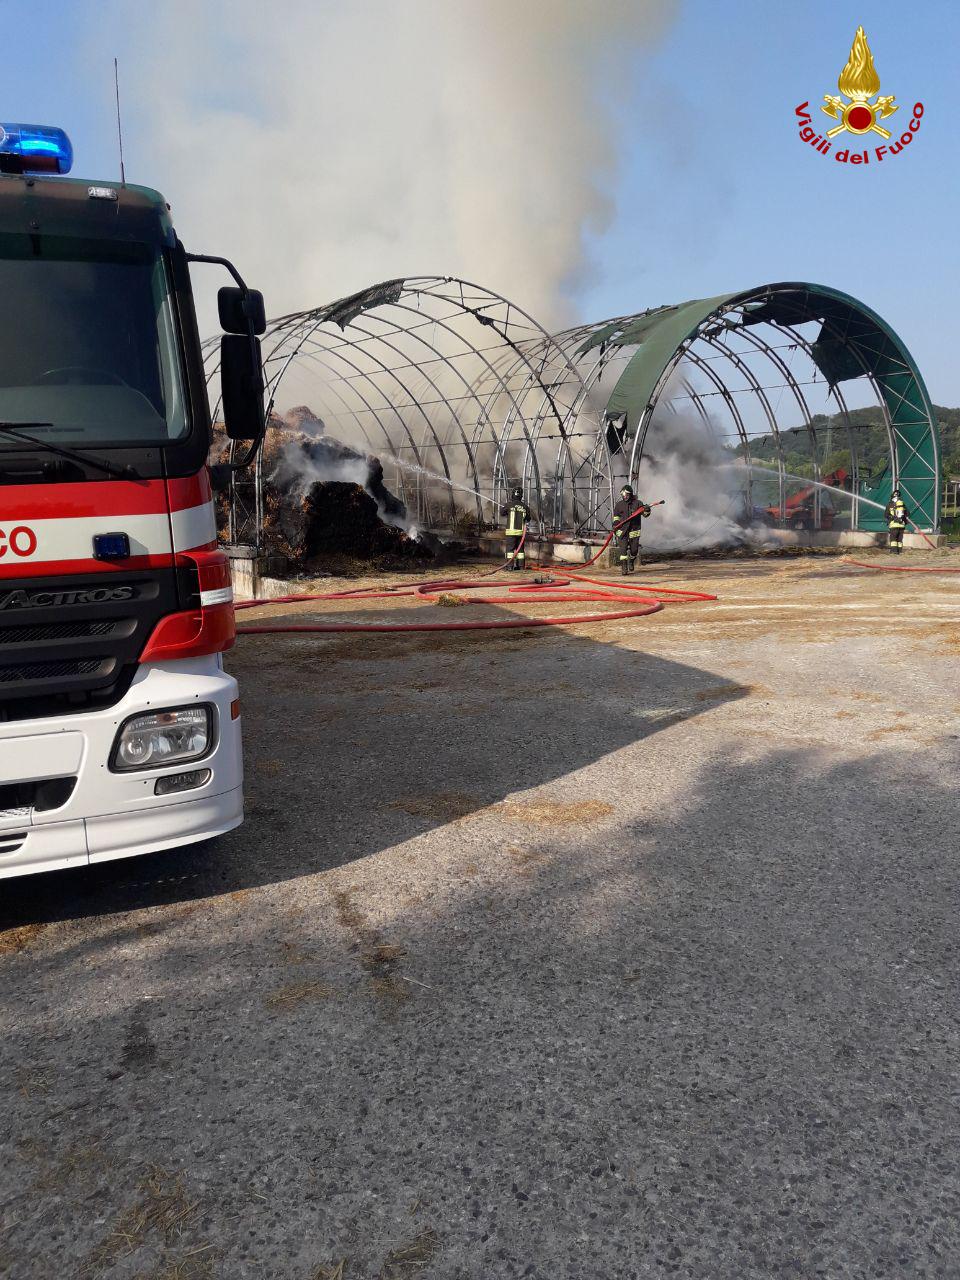 Incendio San Zenone degli Ezzelini, autocombustione accidentale: 1.500 quintali di fieno in fumo